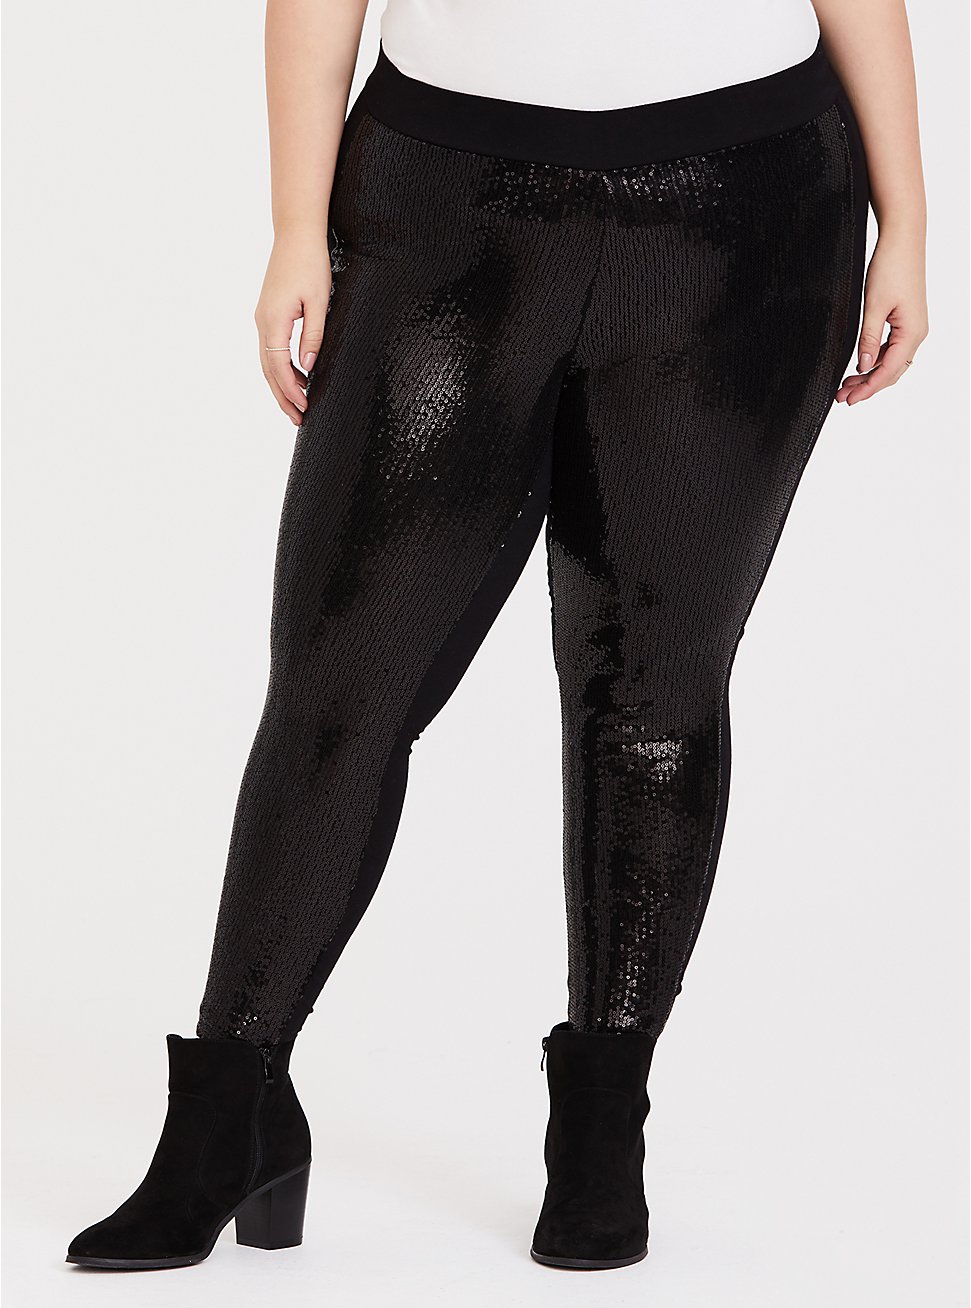 Platinum Legging - Sequin Black, BLACK, hi-res